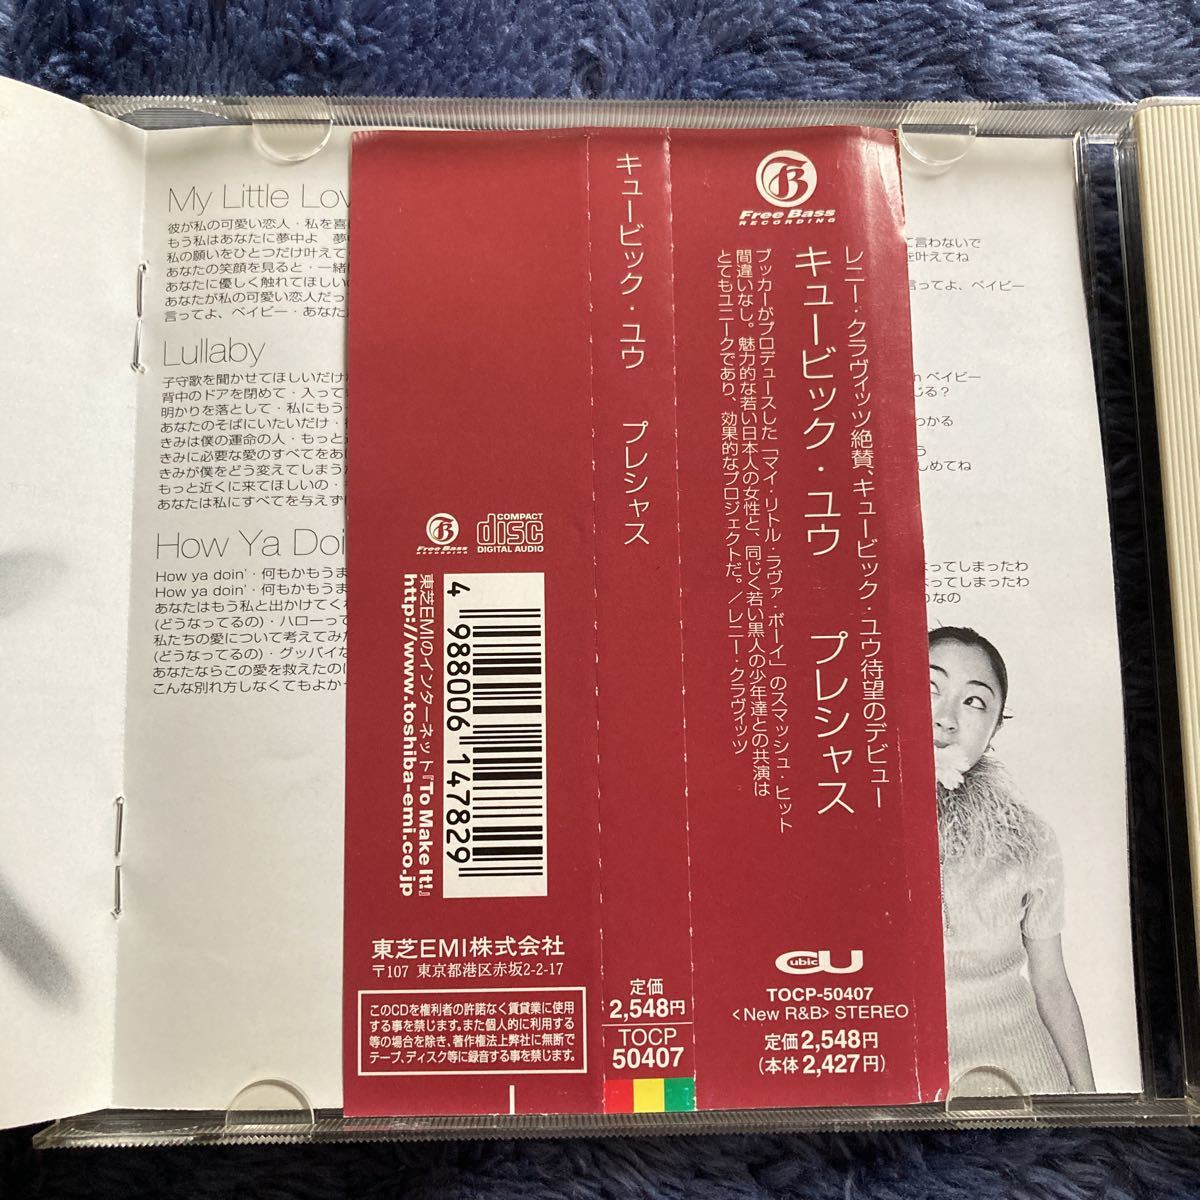 即決 送料無料 宇多田ヒカル Cubic U Precious ジャケット違い初回オリジナル盤 帯付CD